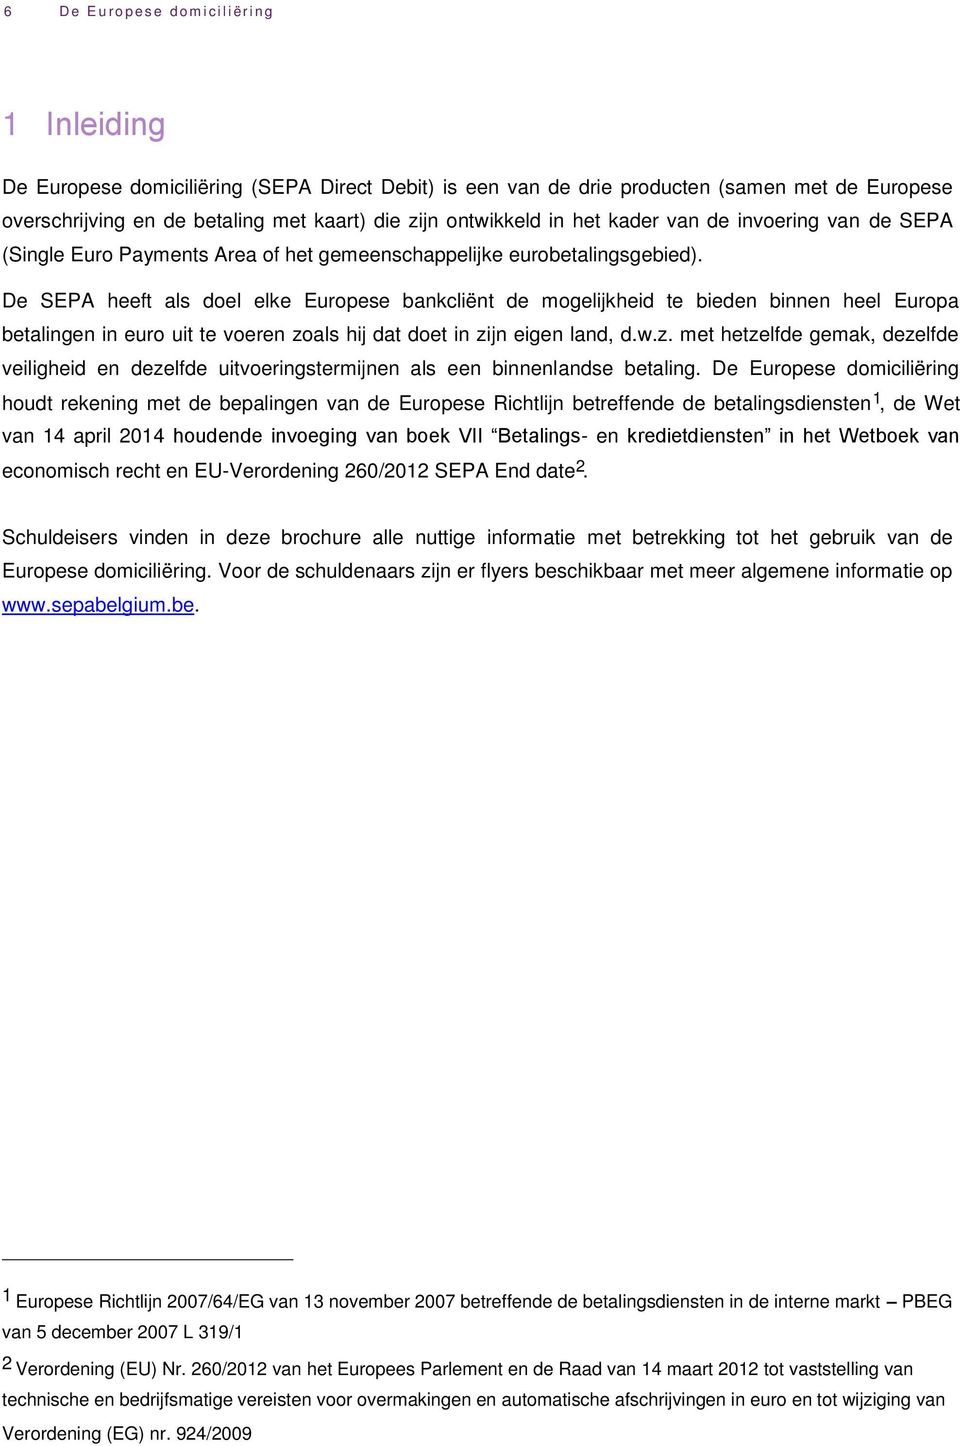 De SEPA heeft als doel elke Europese bankcliënt de mogelijkheid te bieden binnen heel Europa betalingen in euro uit te voeren zo